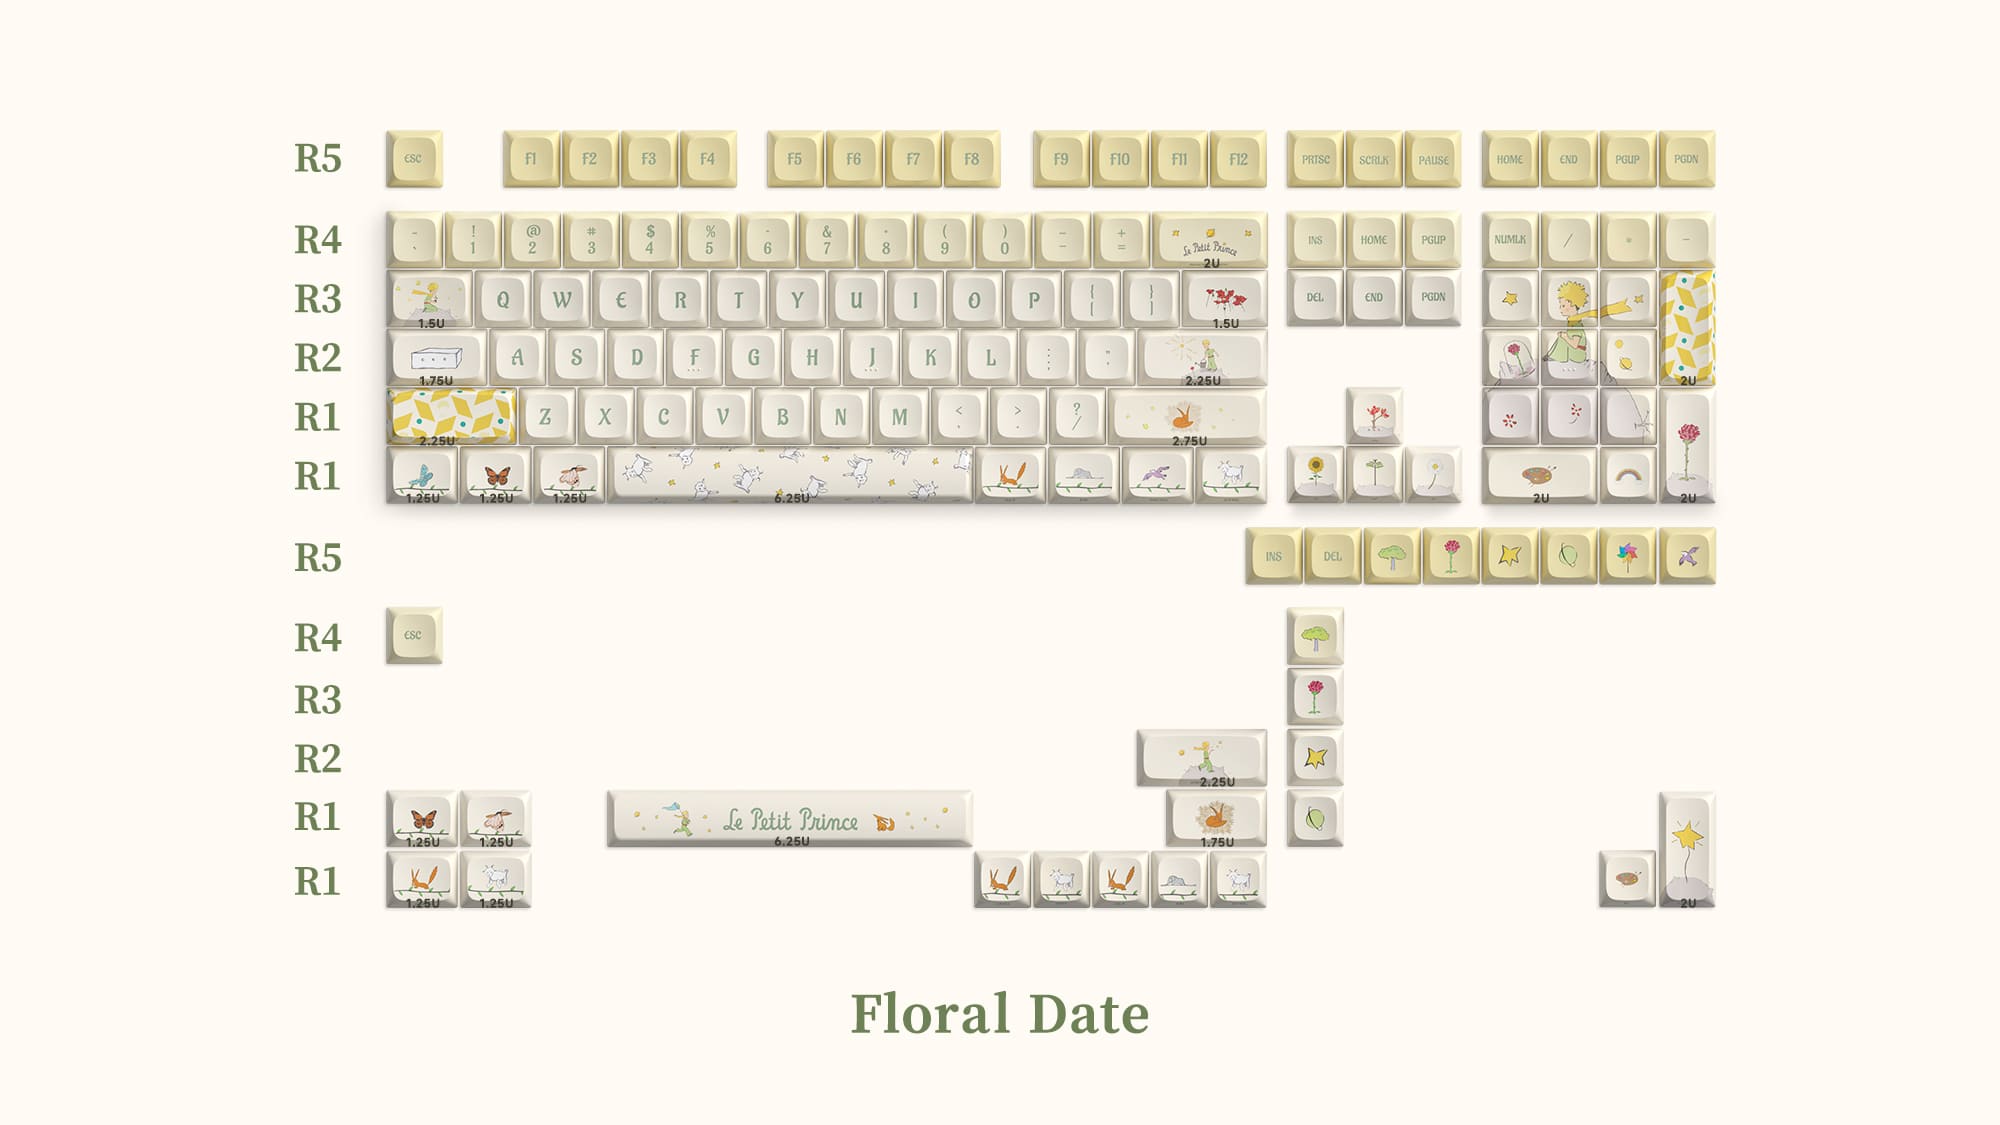 Le Petit Prince Floral Date Keycaps